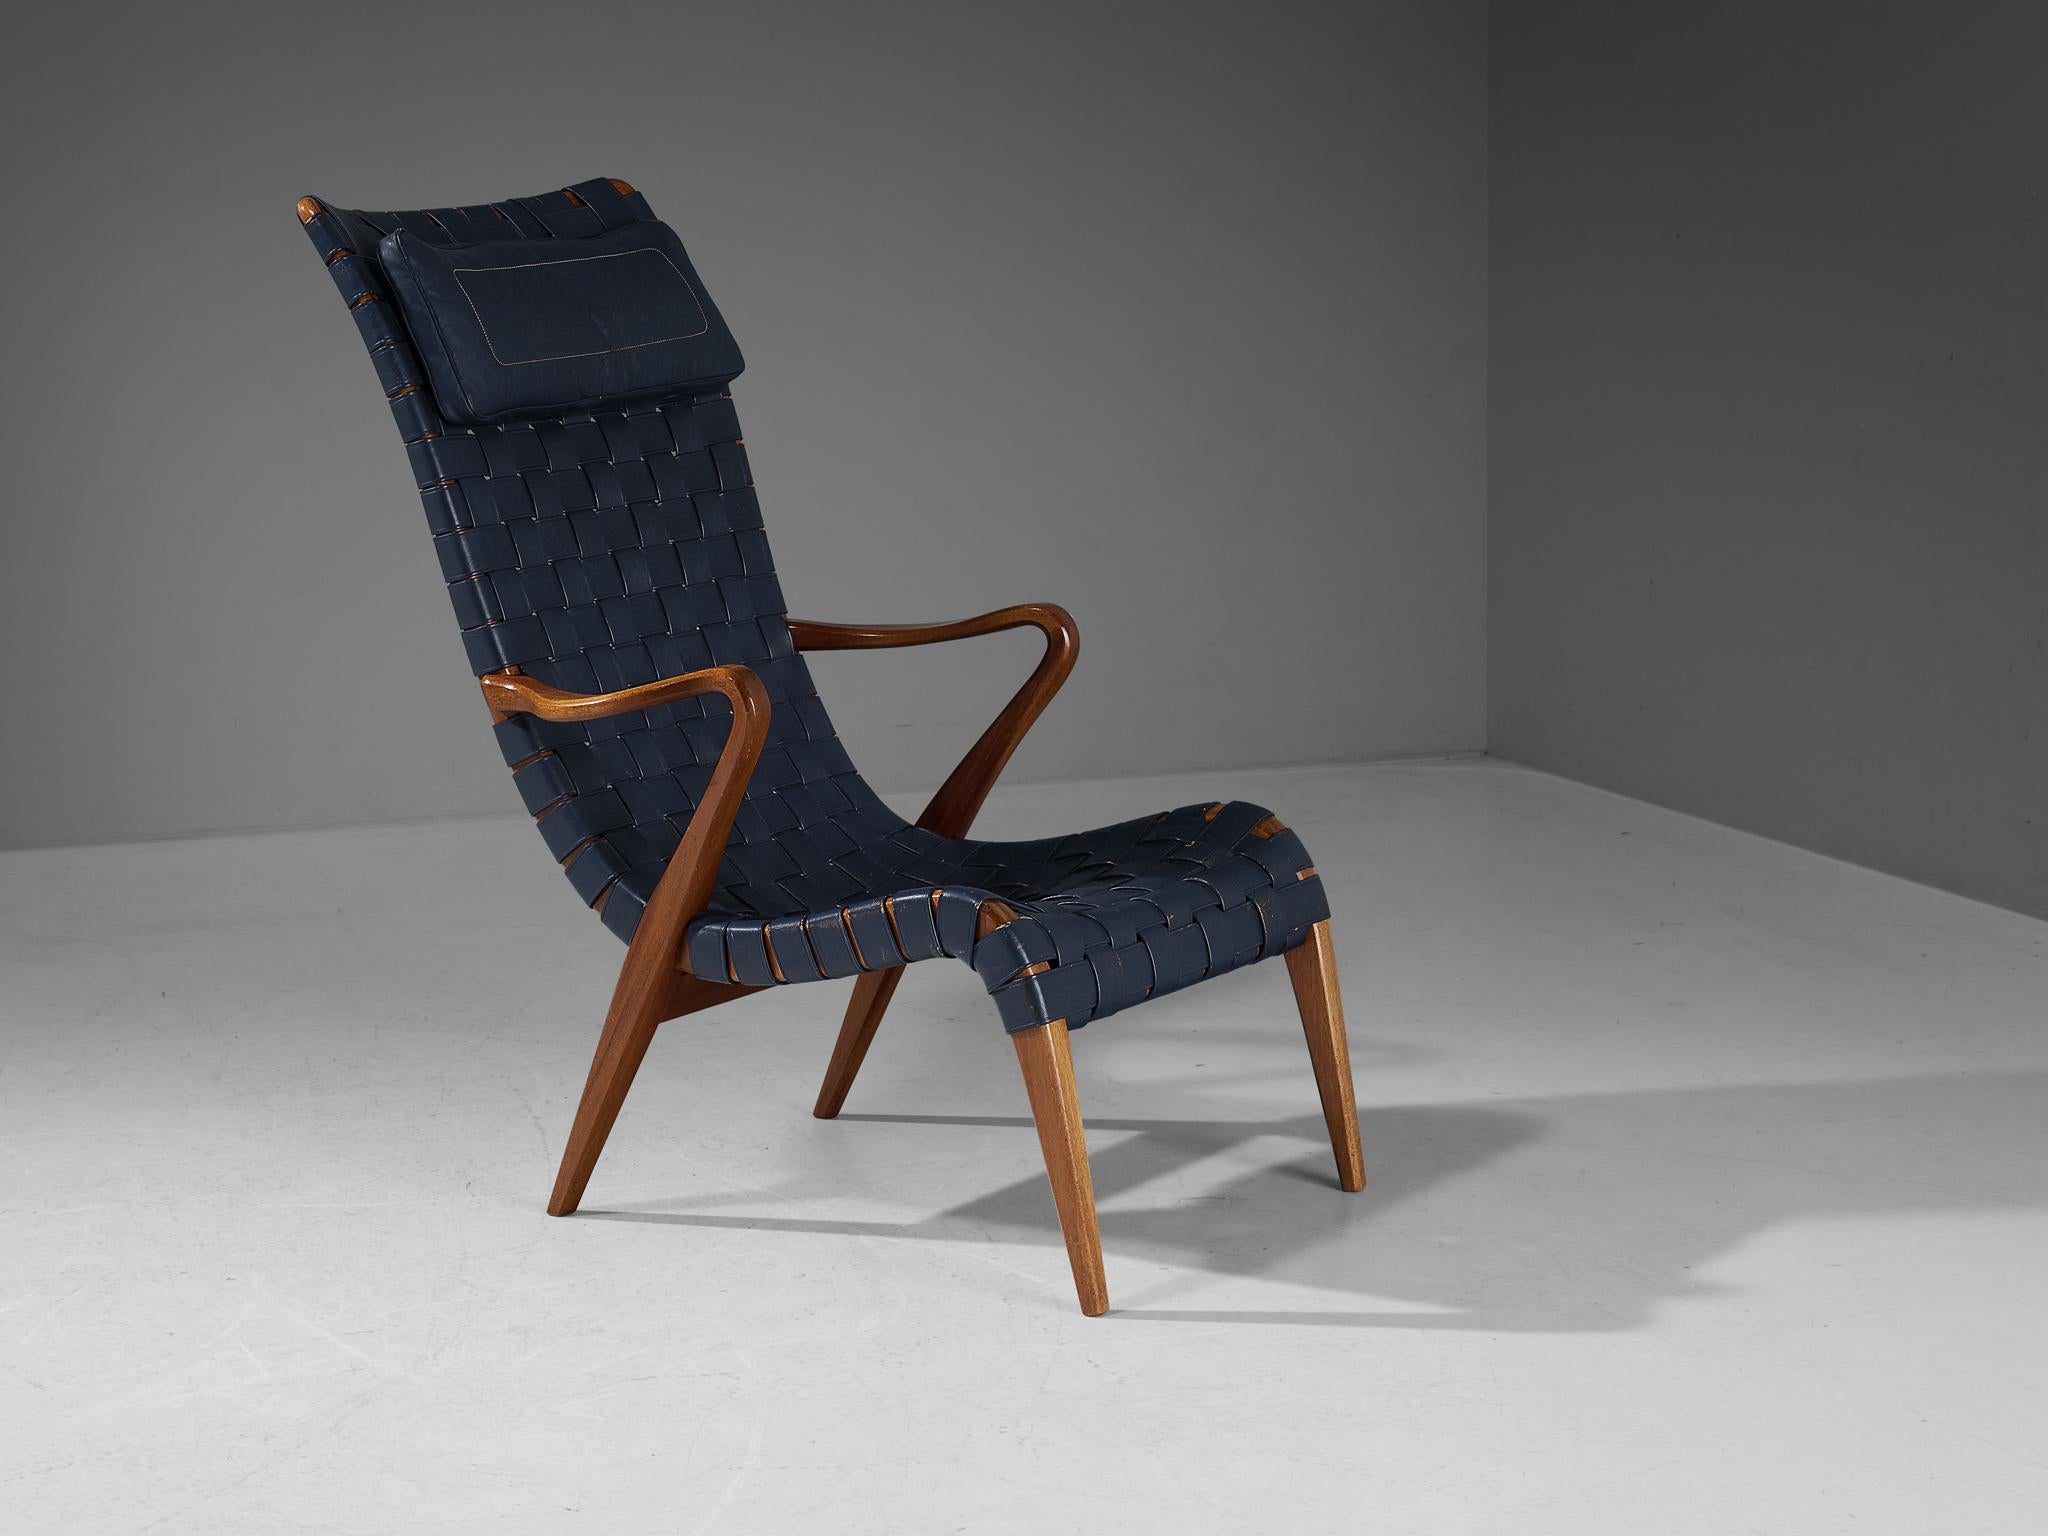 Axel Larsson pour Svenska Möbelfabrikeren Bodafors, chaise longue modèle 1207/5-119, cuir, teck, Suède, années 1950.

Magnifique chaise longue à haut dossier conçue par Axel Larsson. Le cadre de cette chaise est très épuré et présente des doublures